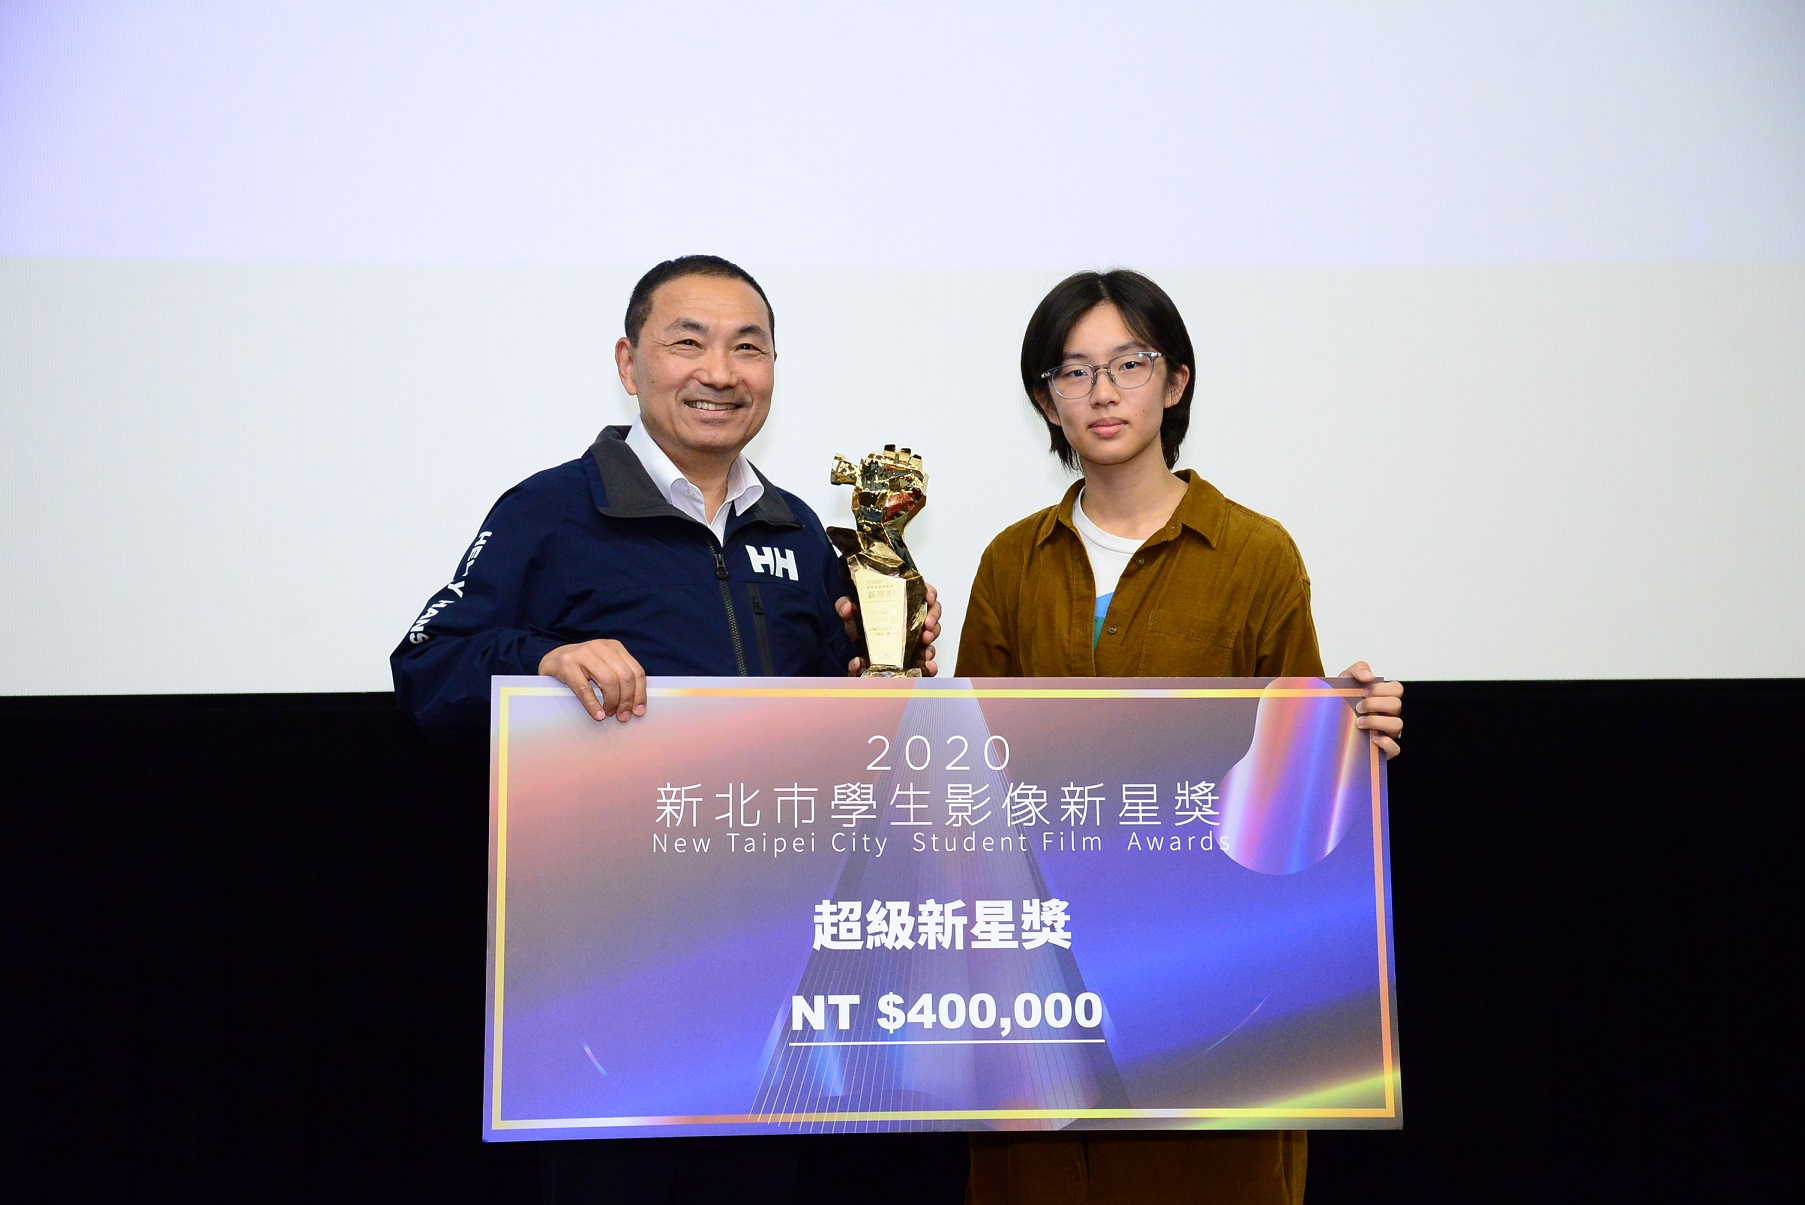 臺北藝術大學得獎作品《家庭式》代表同學(右)接受市長頒發超級新星獎